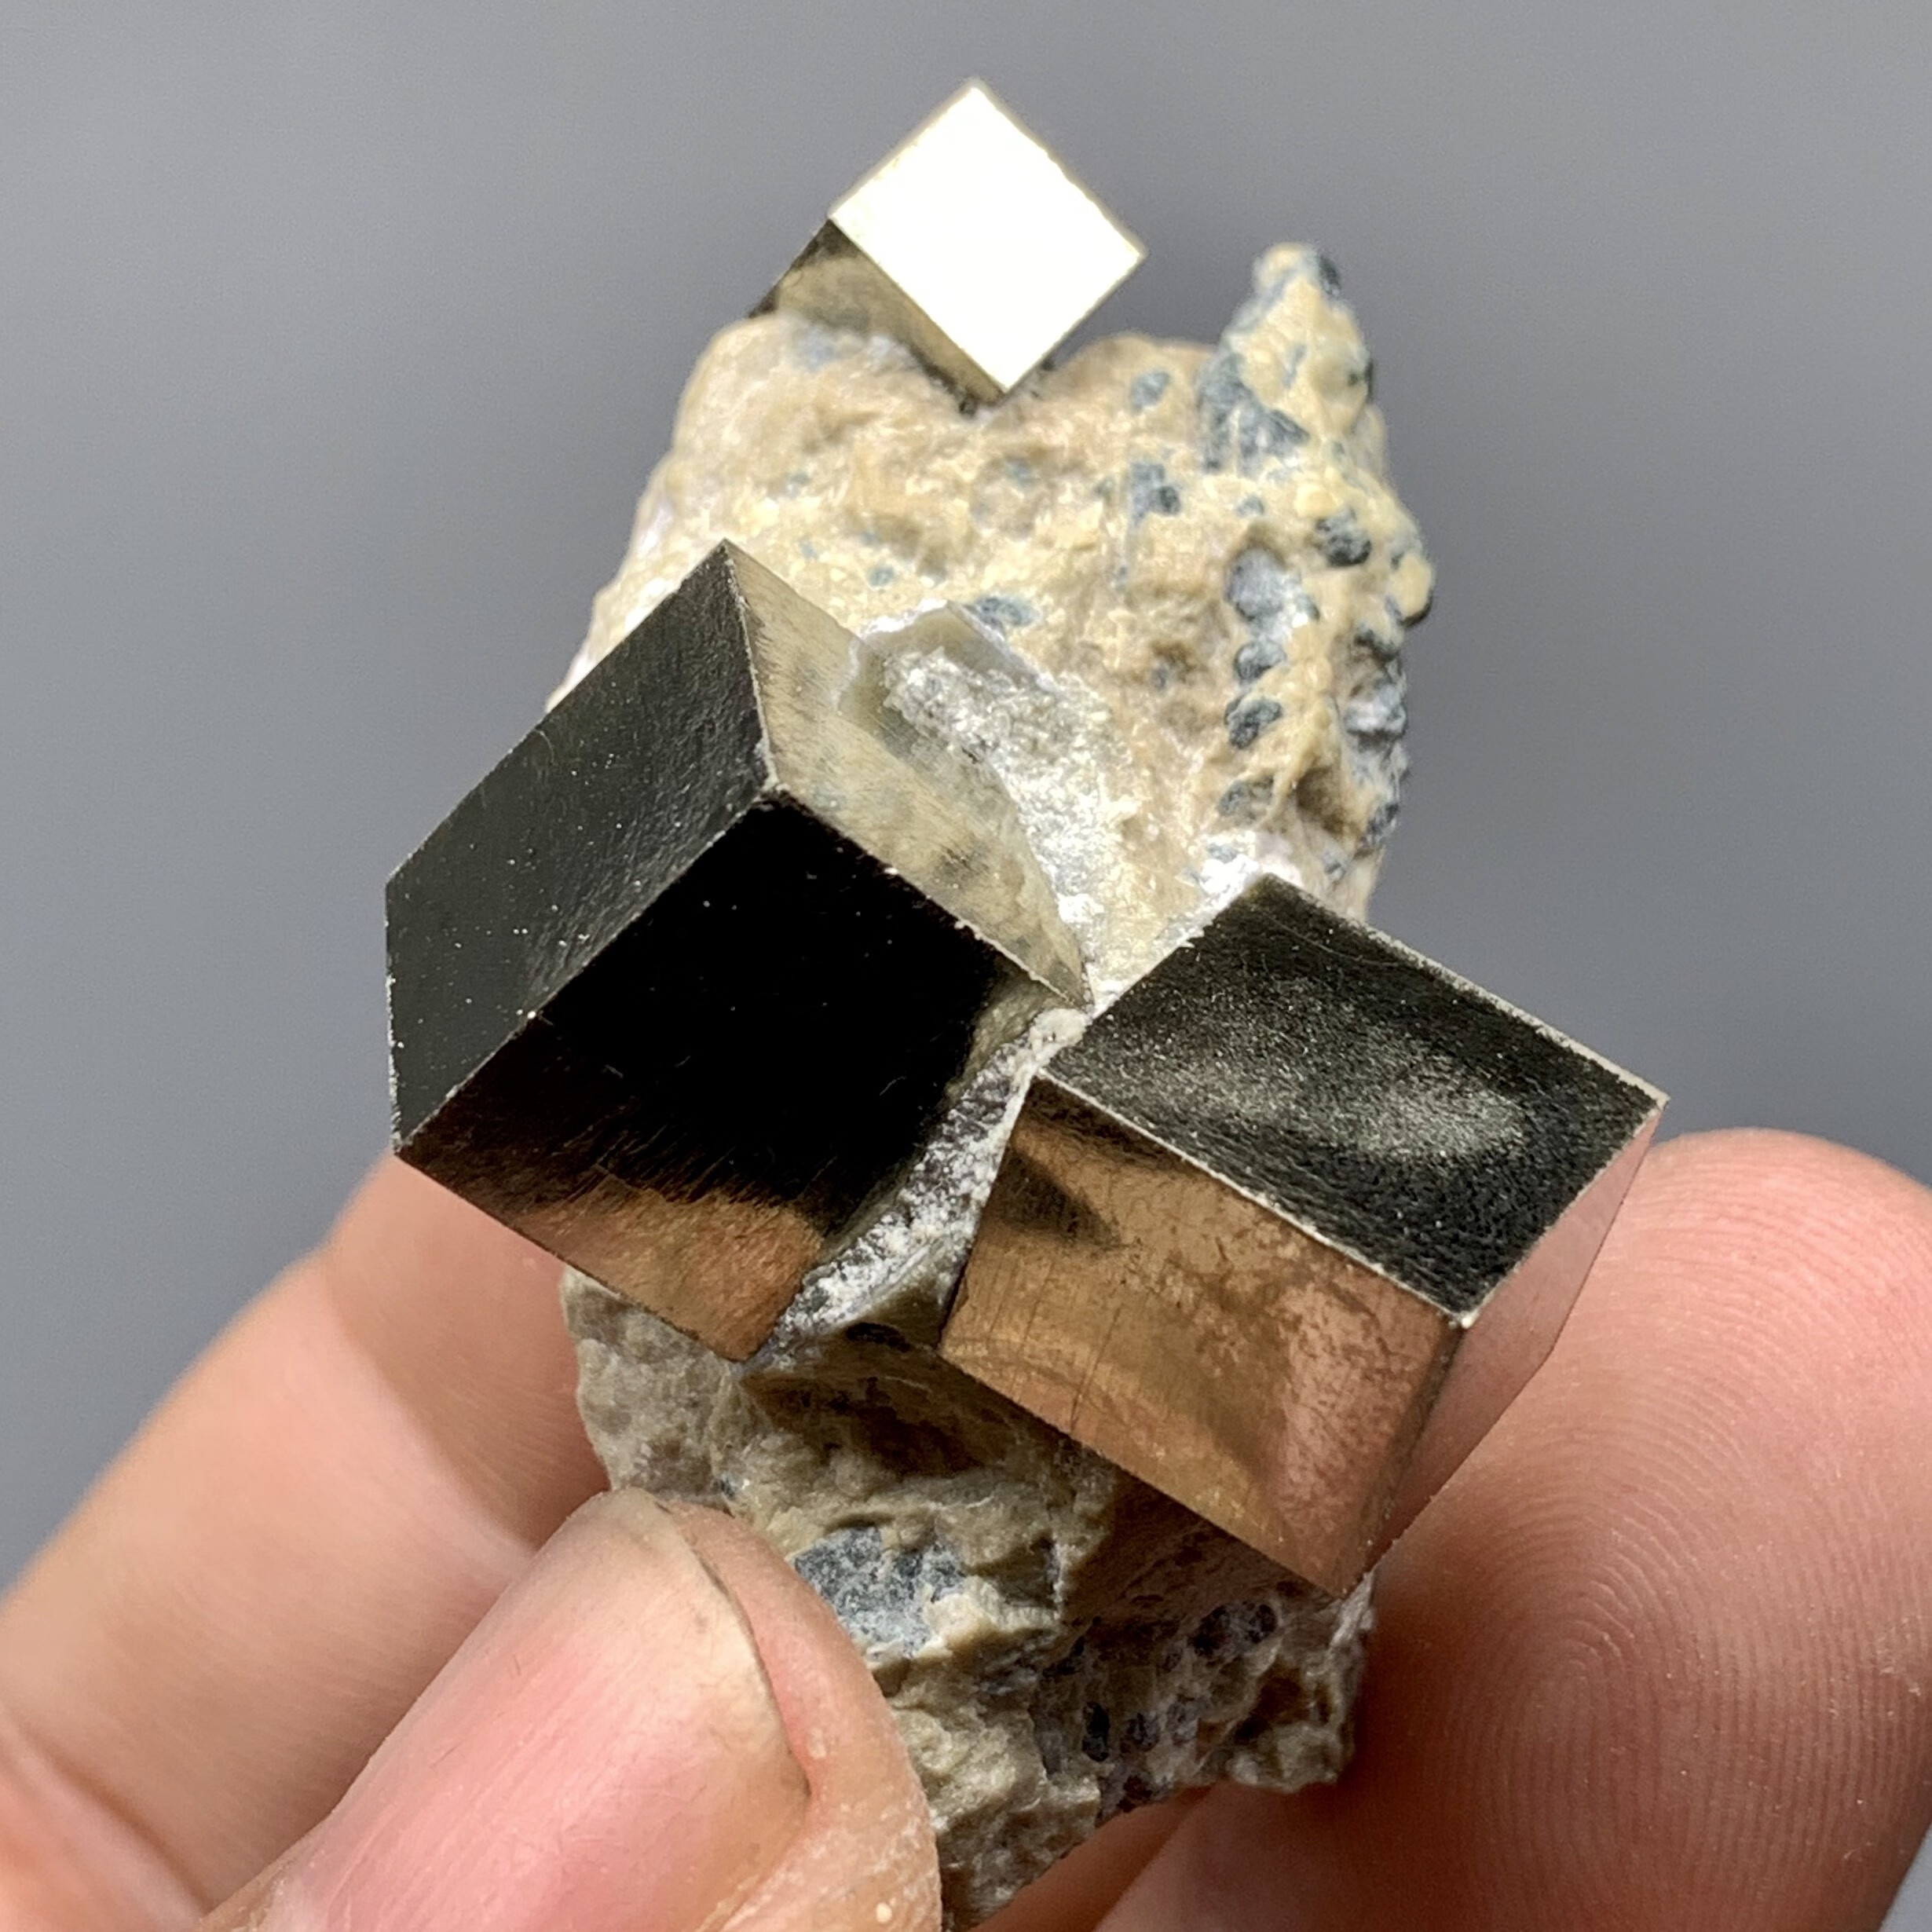 黄铁矿原石 西班牙黄铁矿立方体矿物晶体 教学标本矿石原石收藏石头